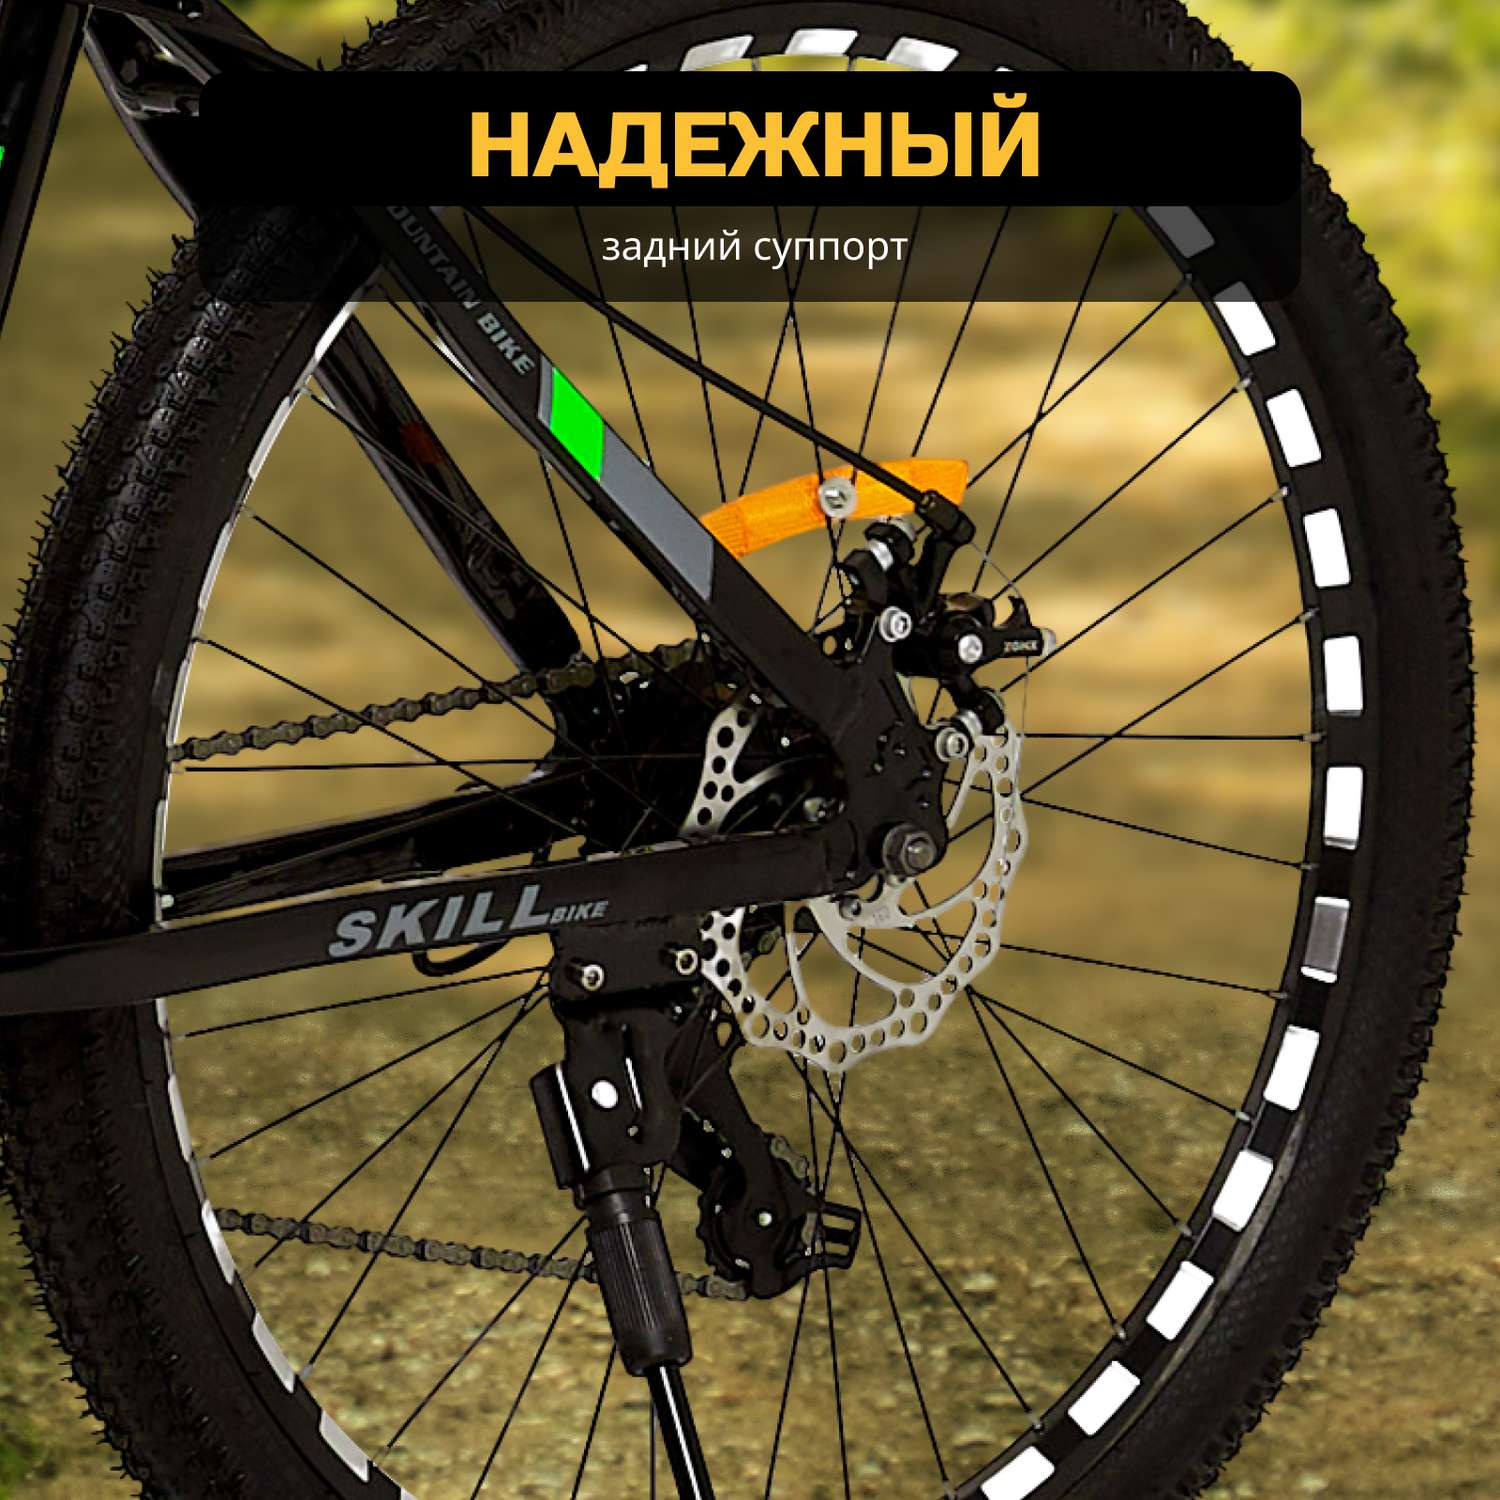 Велосипед Skill Bike blackGreen 3050 - фото 9